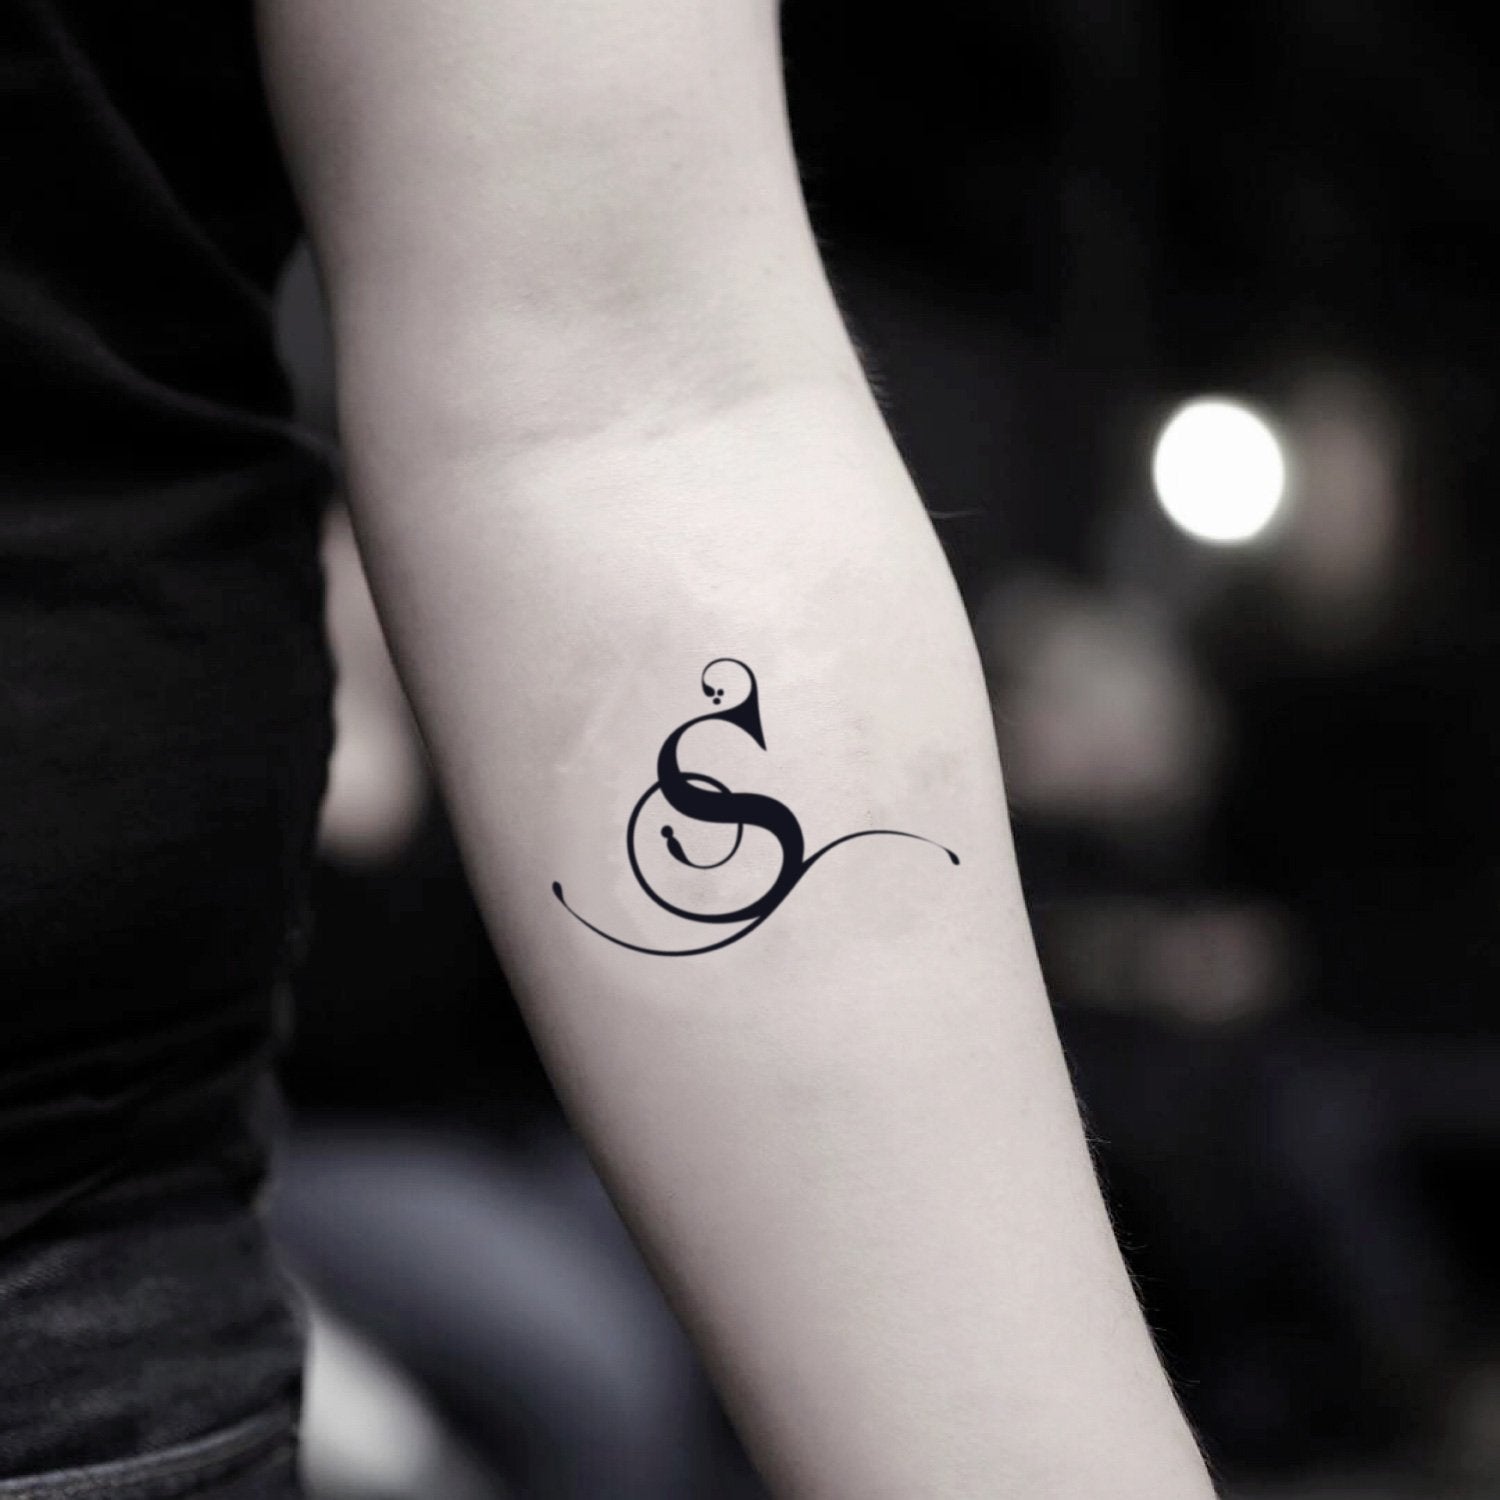 What tattoos symbolizes acceptance? - Quora